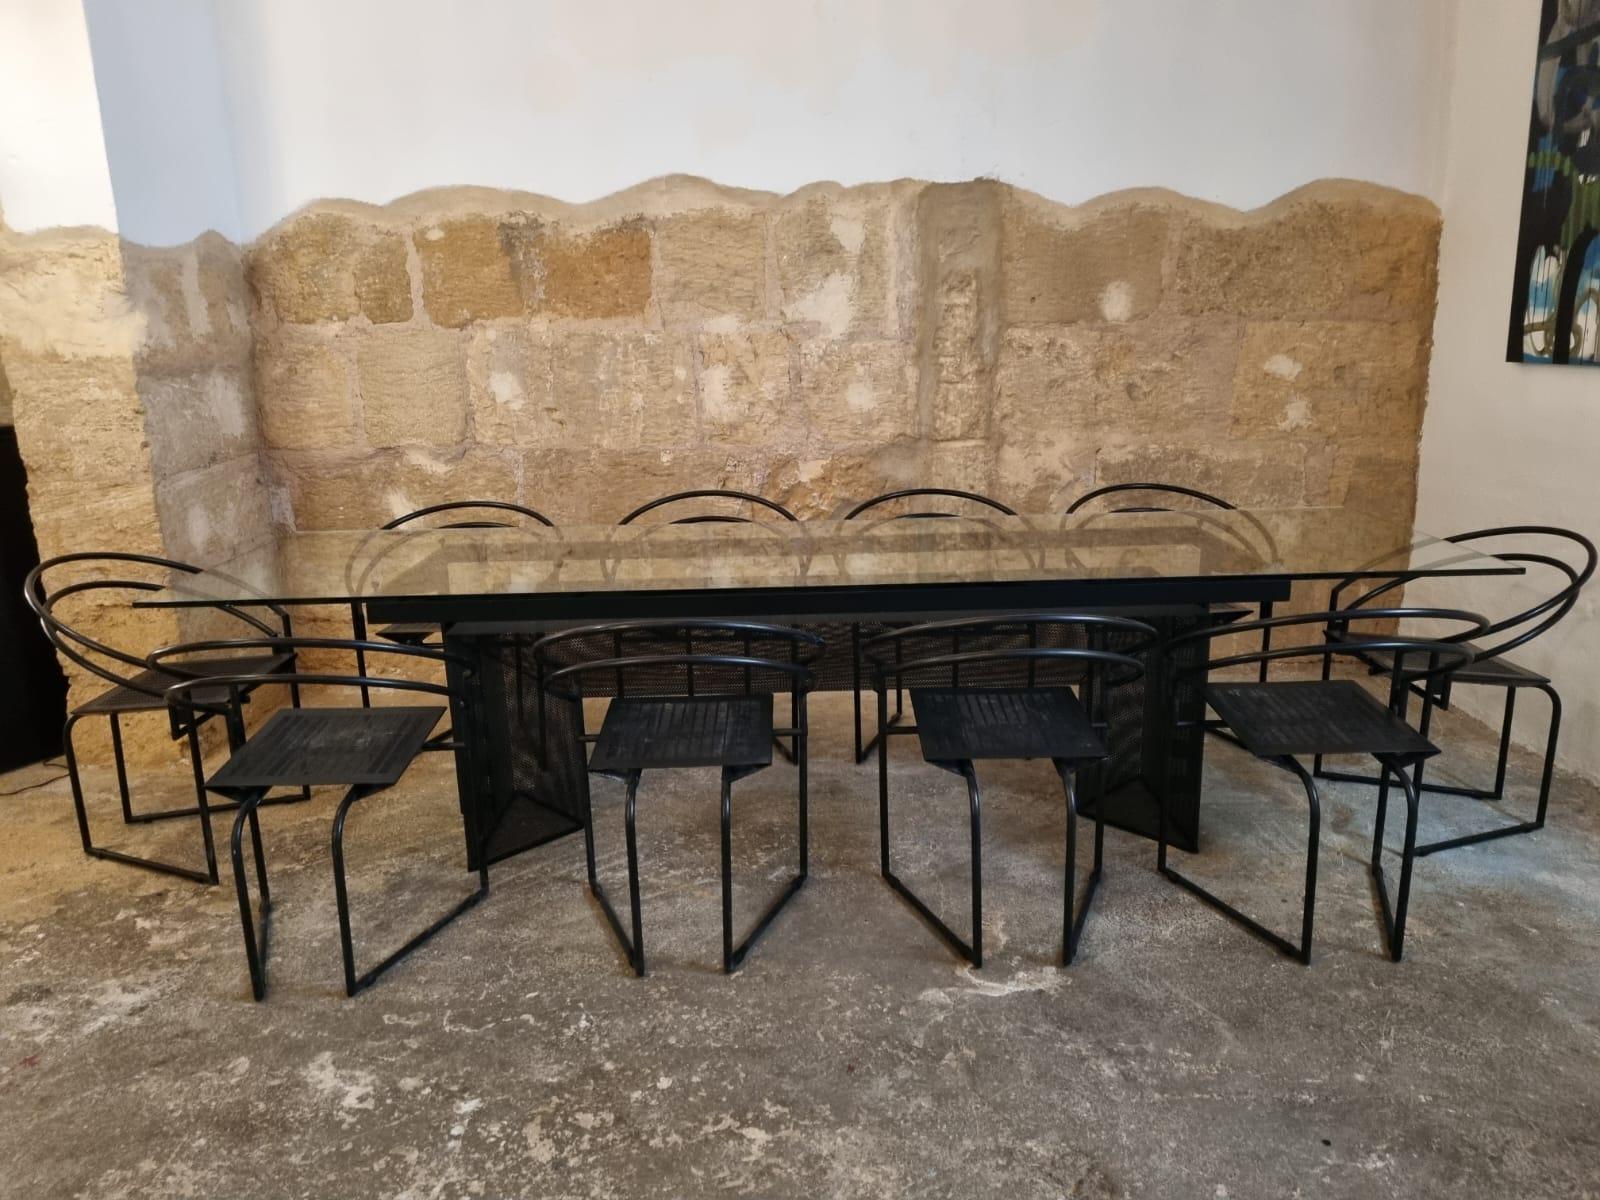 Wunderschönes originales Esszimmer-Set von Mario Botta für Alias, Italien 1985, bestehend aus großem Esstisch und 10x La Tonda Stühlen, insgesamt sehr guter Zustand

--Tisch und/oder Stühle KÖNNEN bei Interesse separat verkauft werden.

Ungefähr